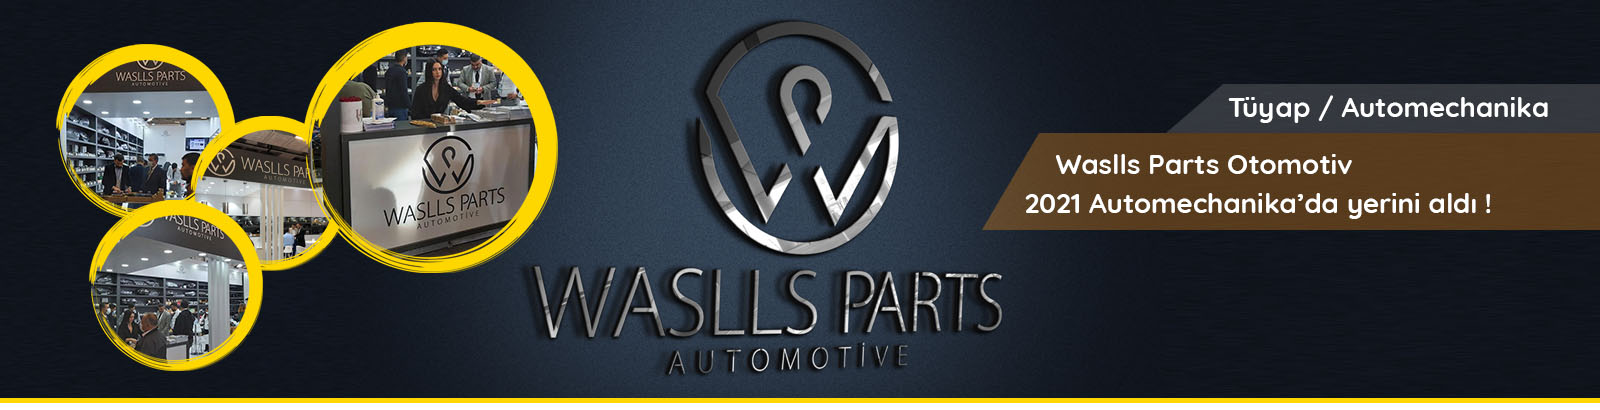 Waslls Parts